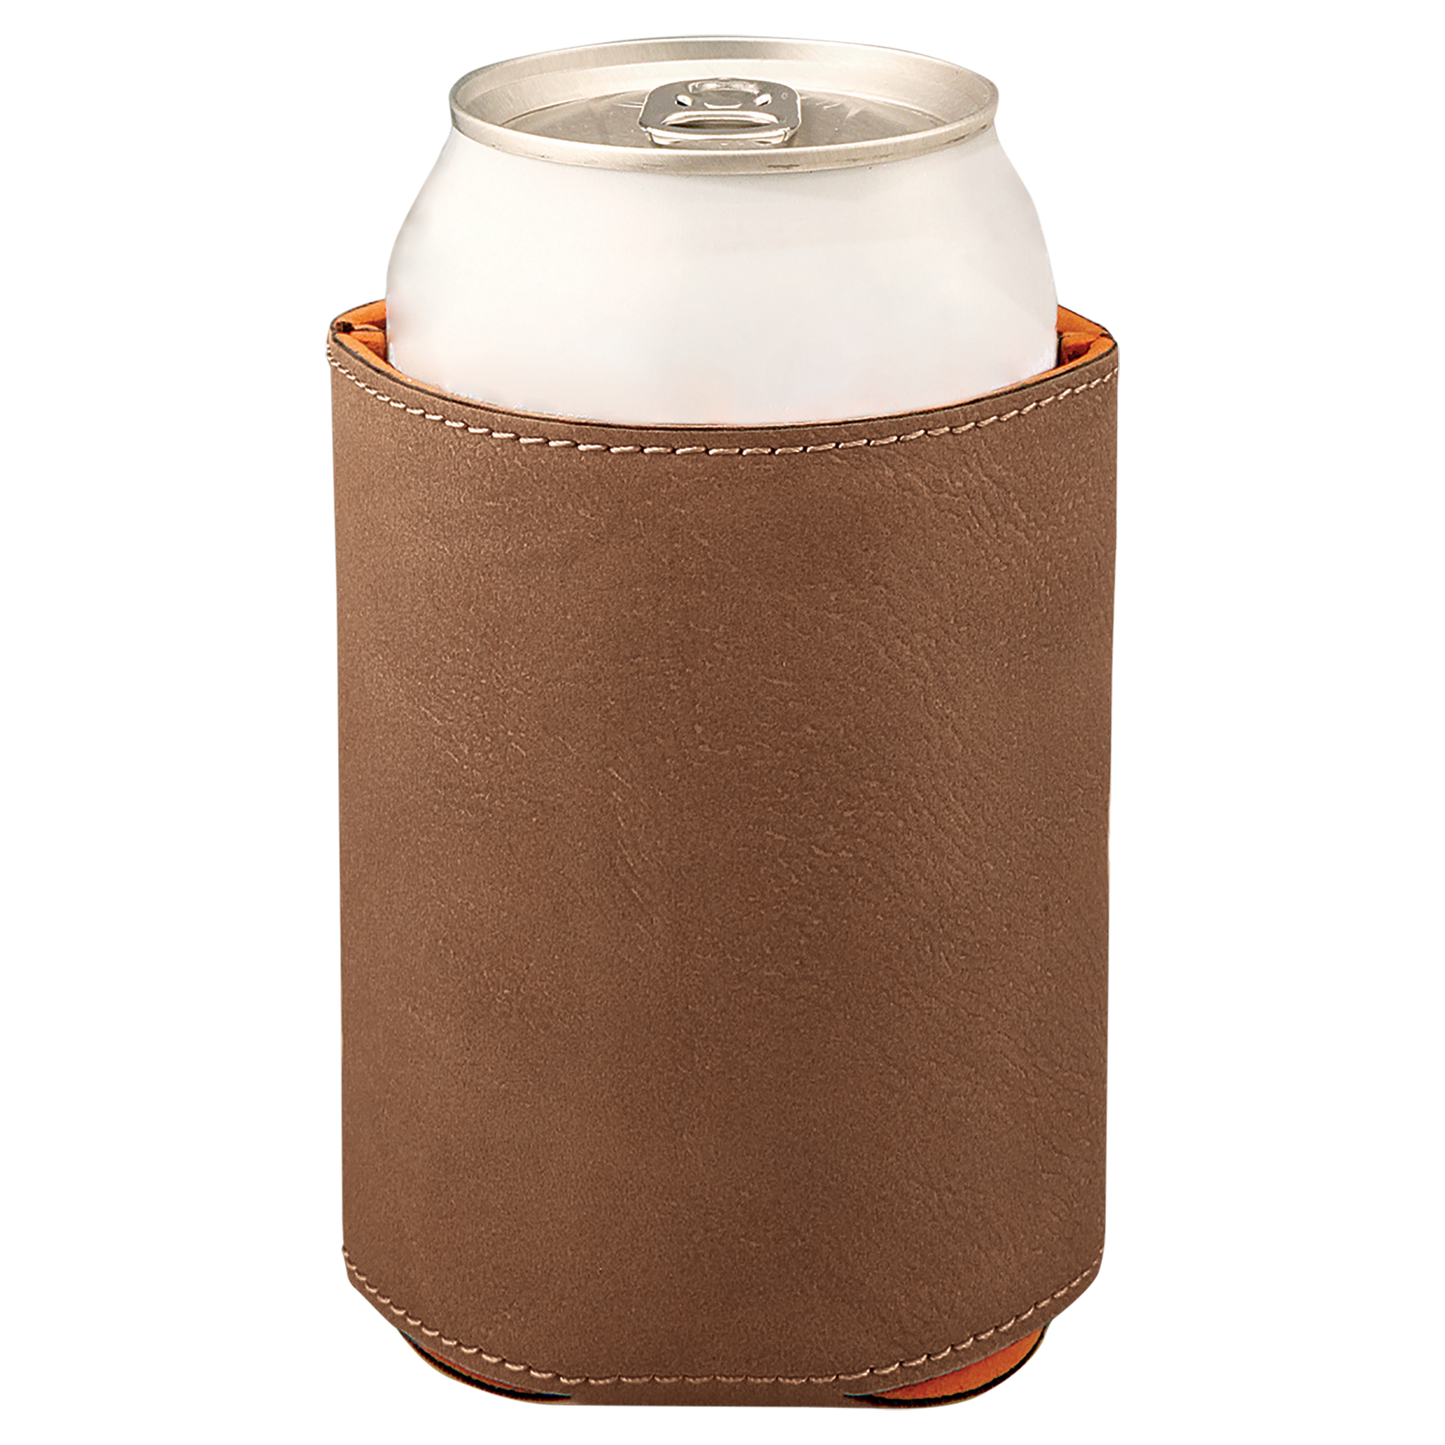 3 3/4" Leatherette Beverage Holder